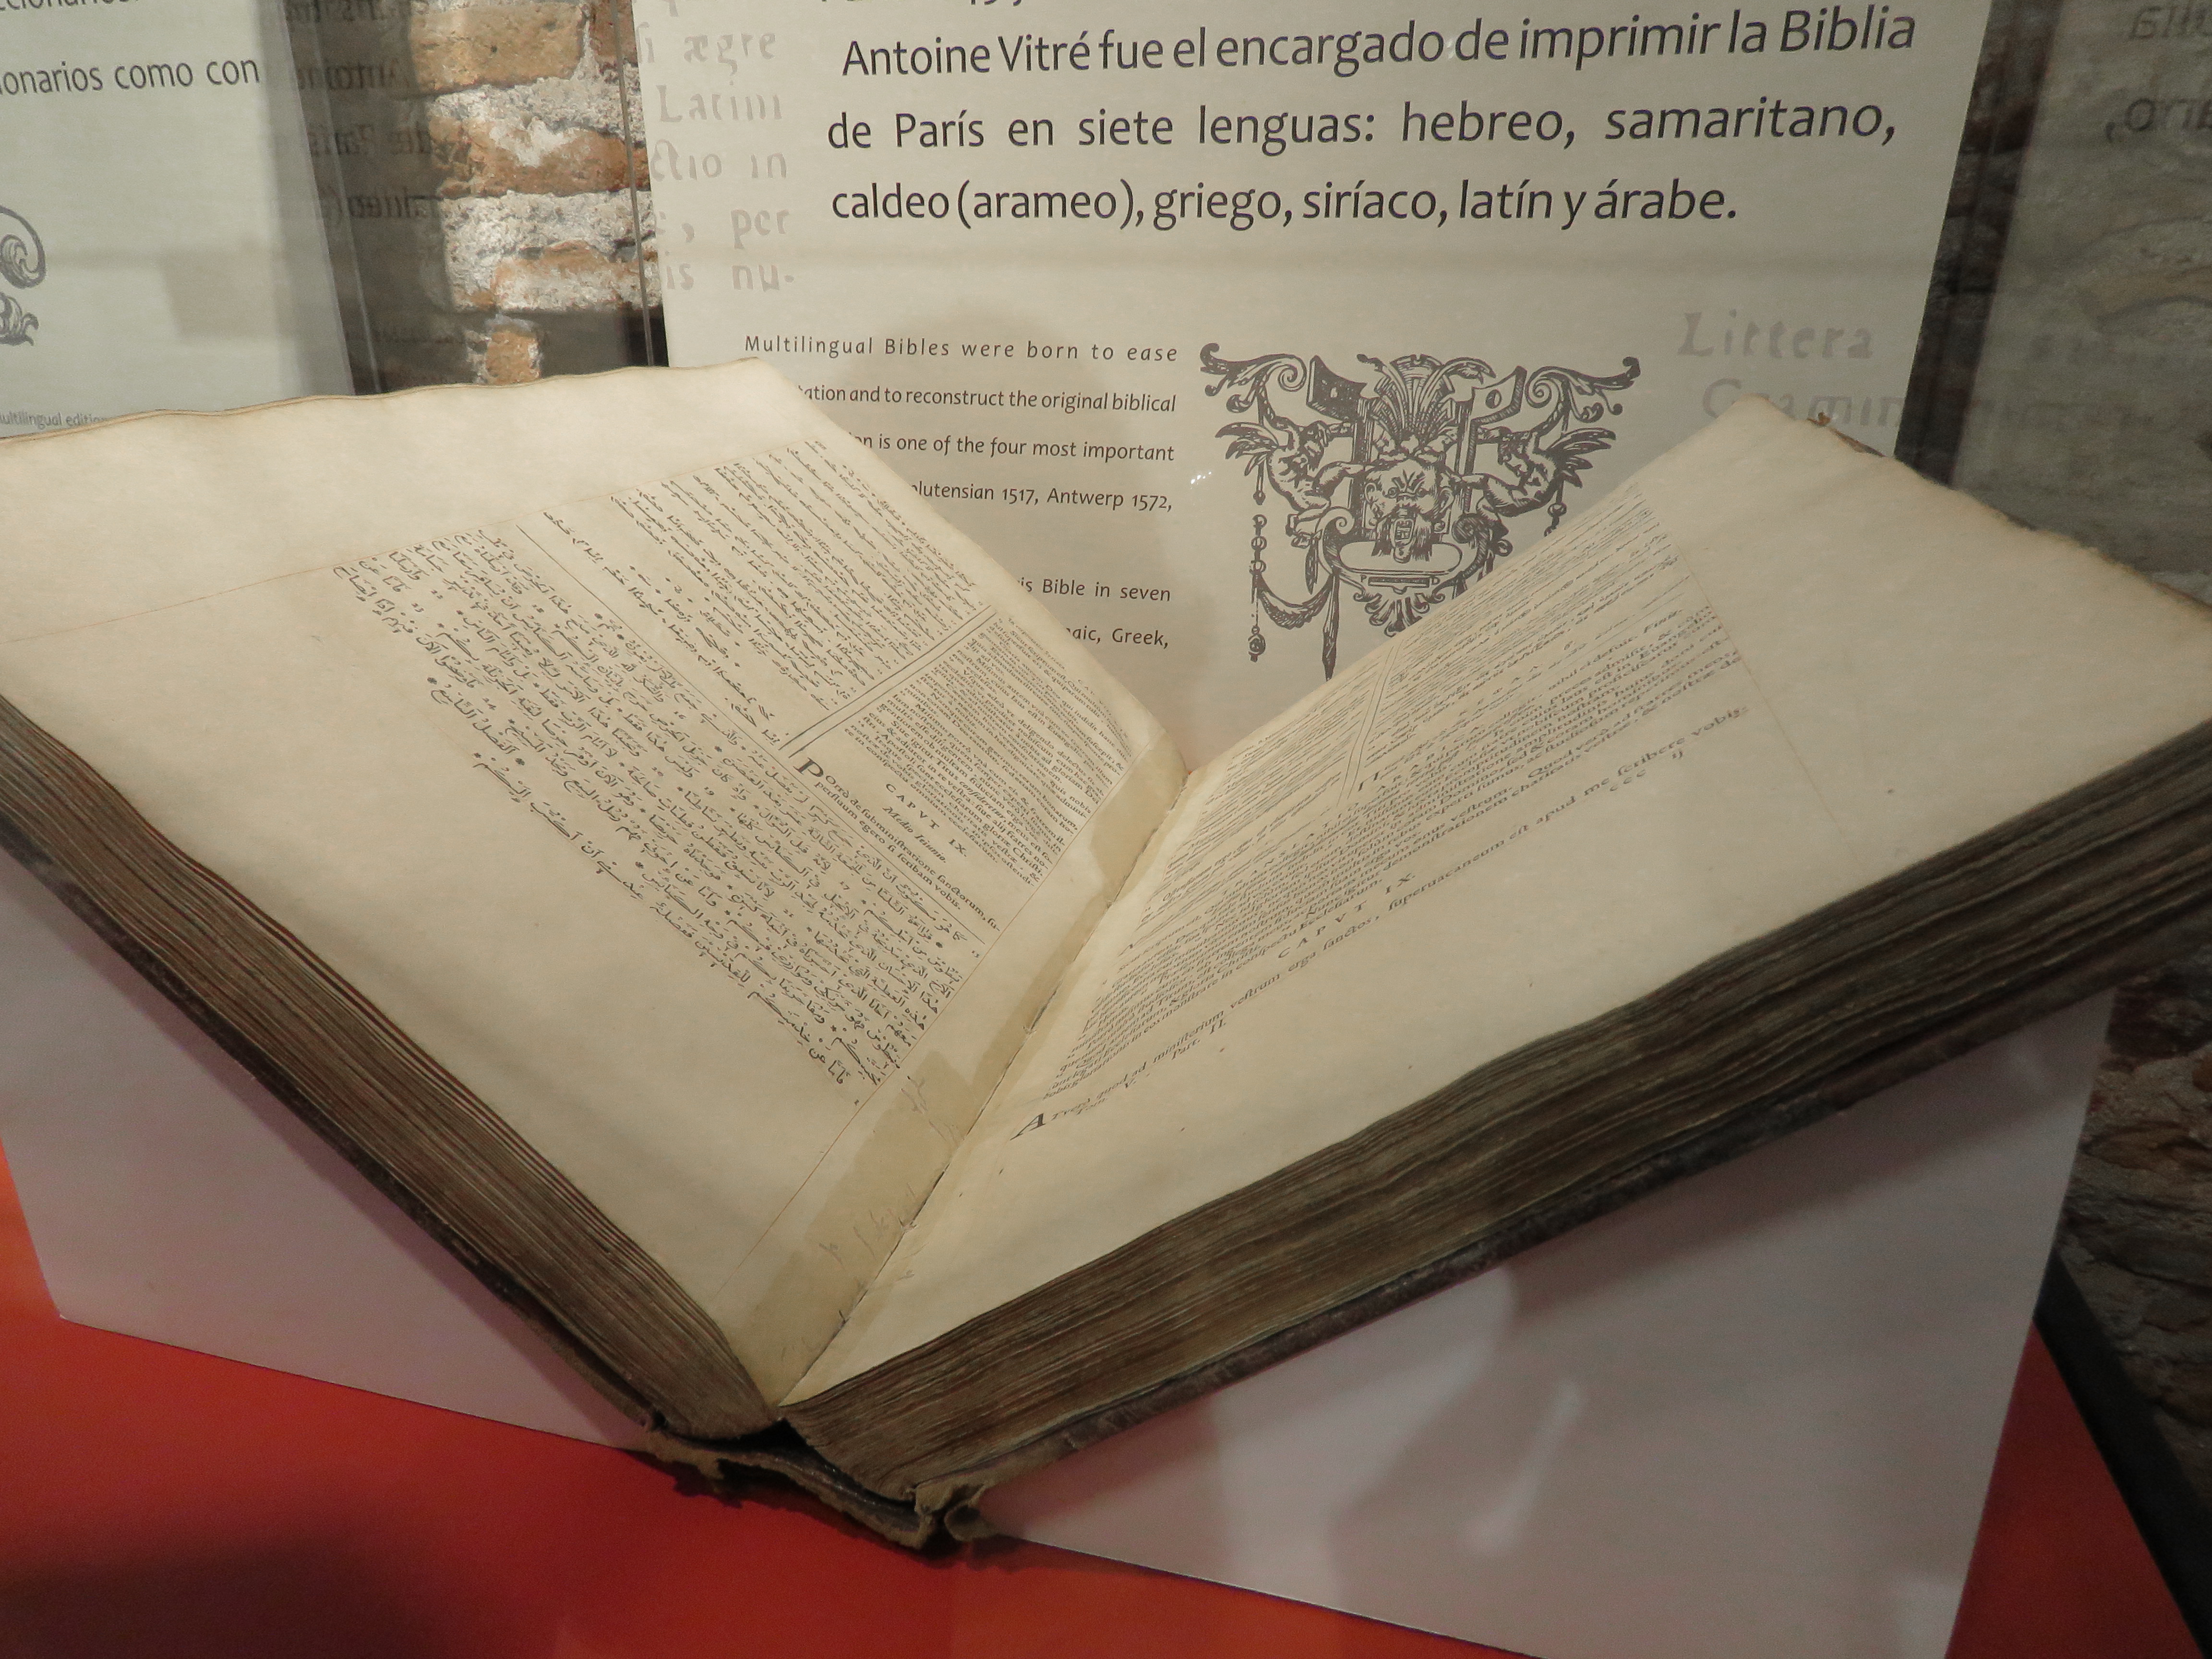 Uno de los ejemplares más conocidos de la colección de libros antiguos de la Biblioteca Nacional de Córdoba: una Bíblia en siete idiomas diferentes